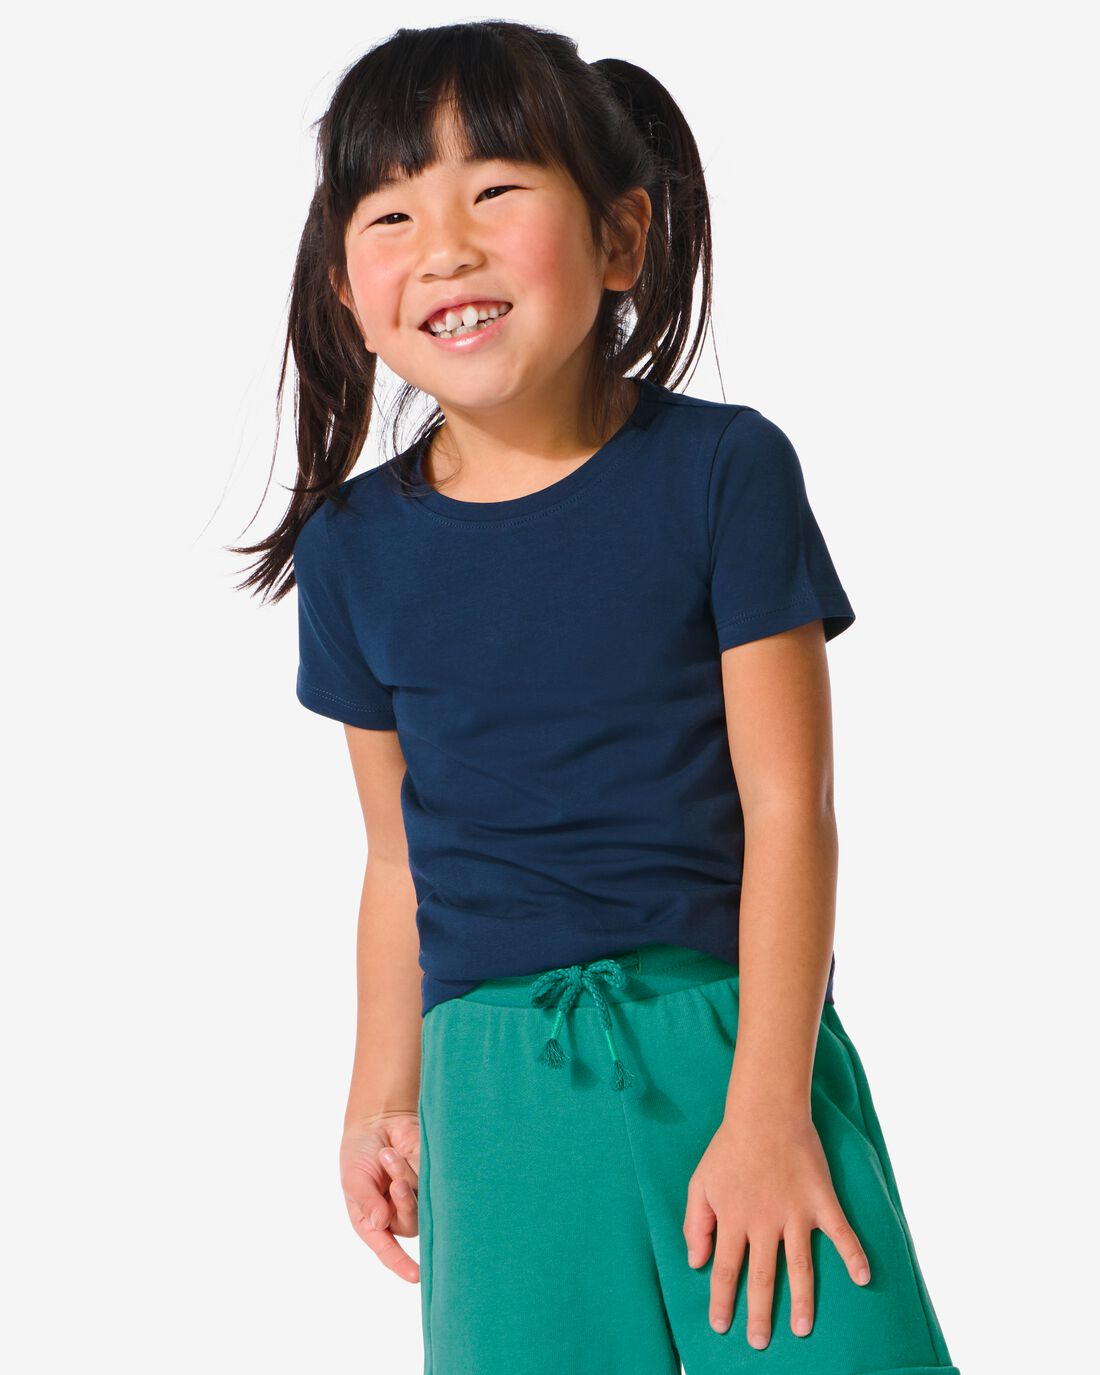 HEMA Kinder T-shirt Biologisch Katoen Donkerblauw (donkerblauw)